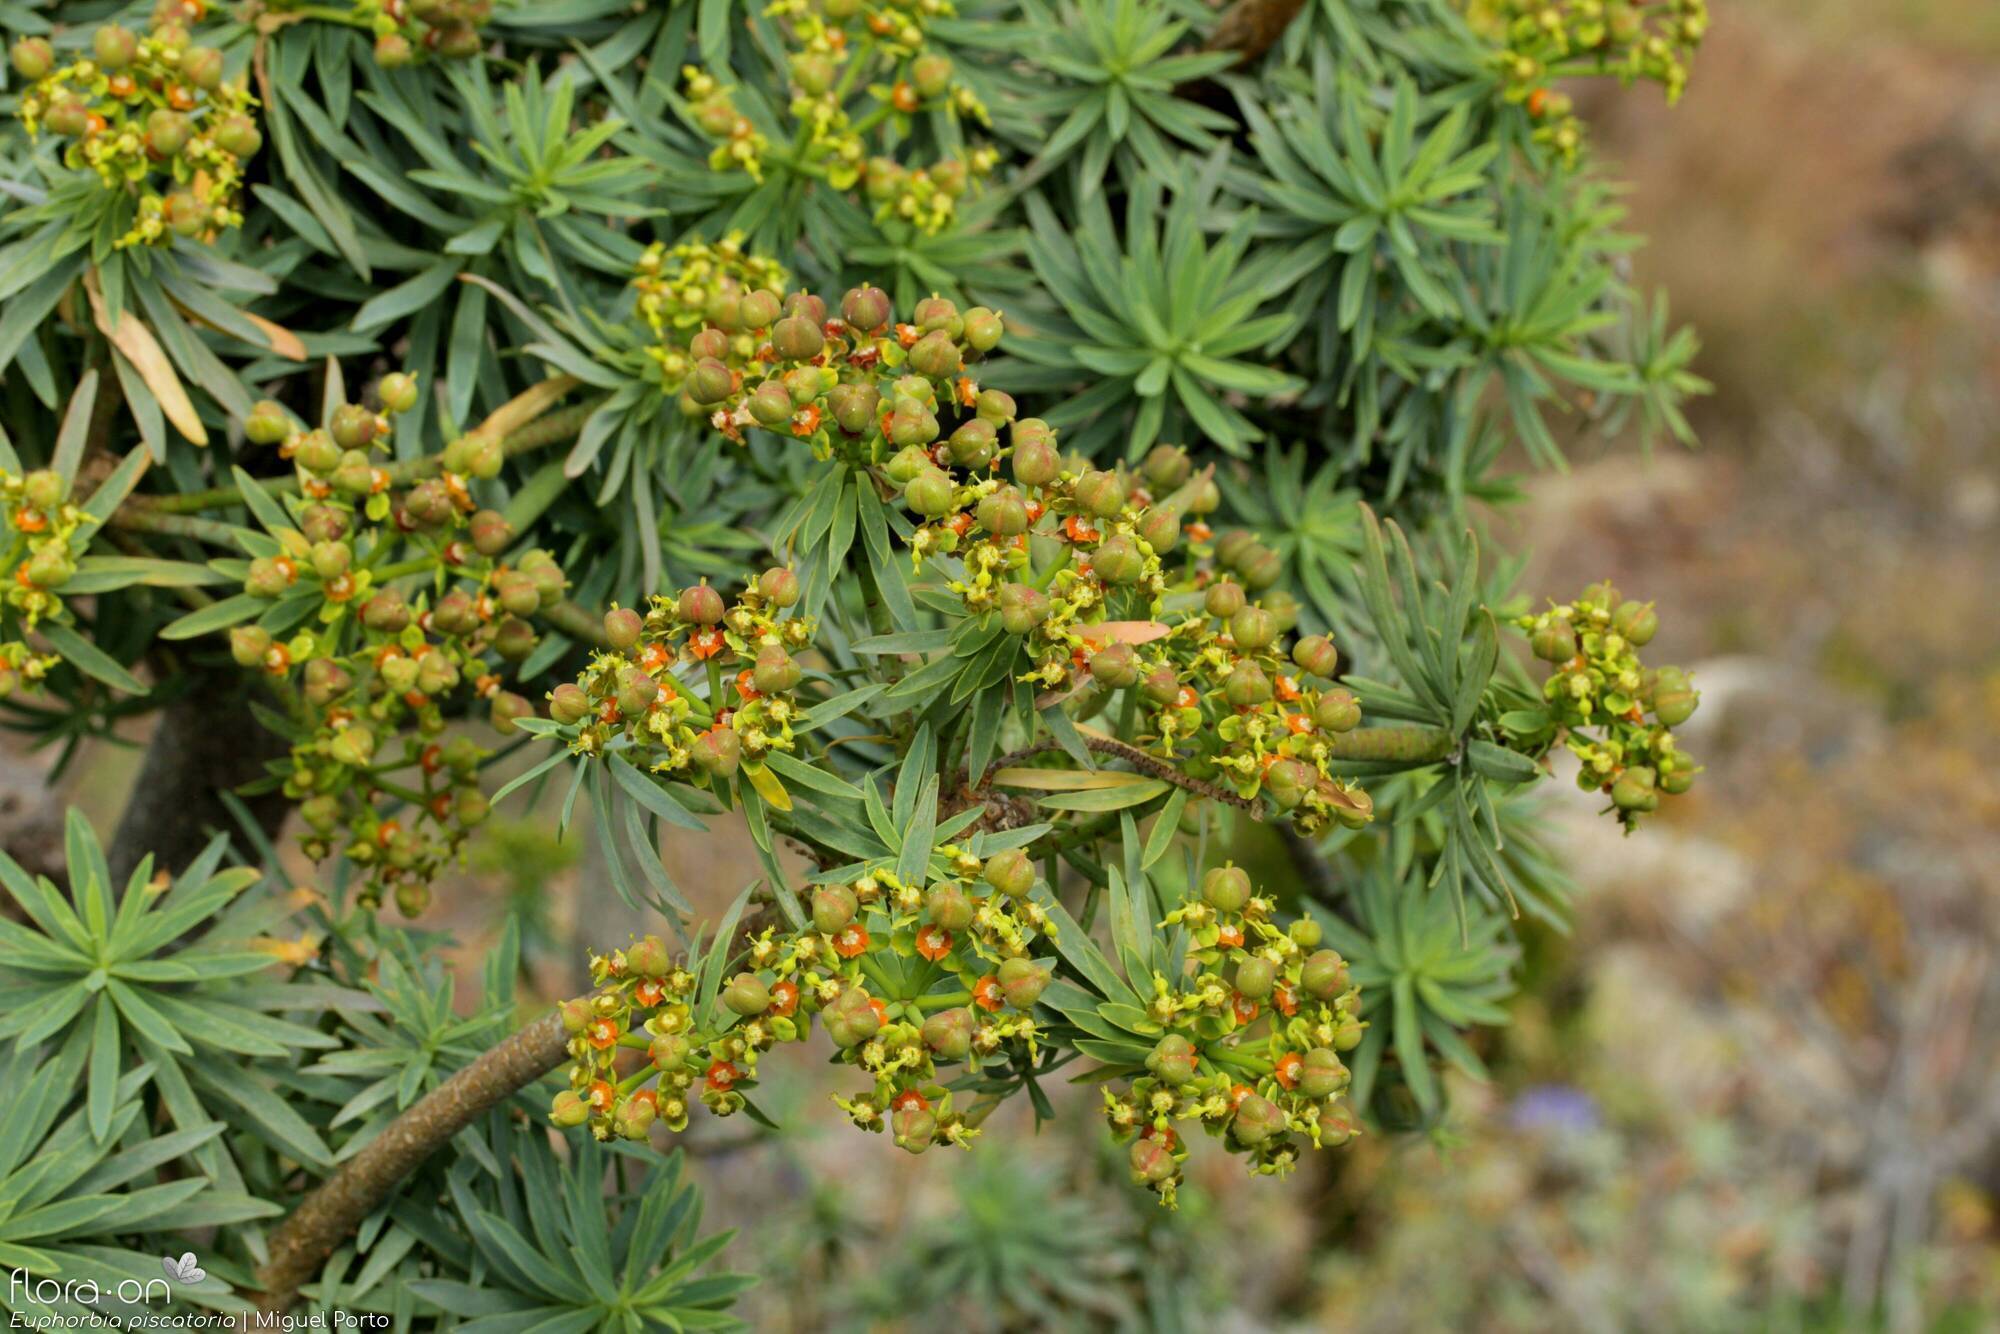 Euphorbia piscatoria - Flor (geral) | Miguel Porto; CC BY-NC 4.0